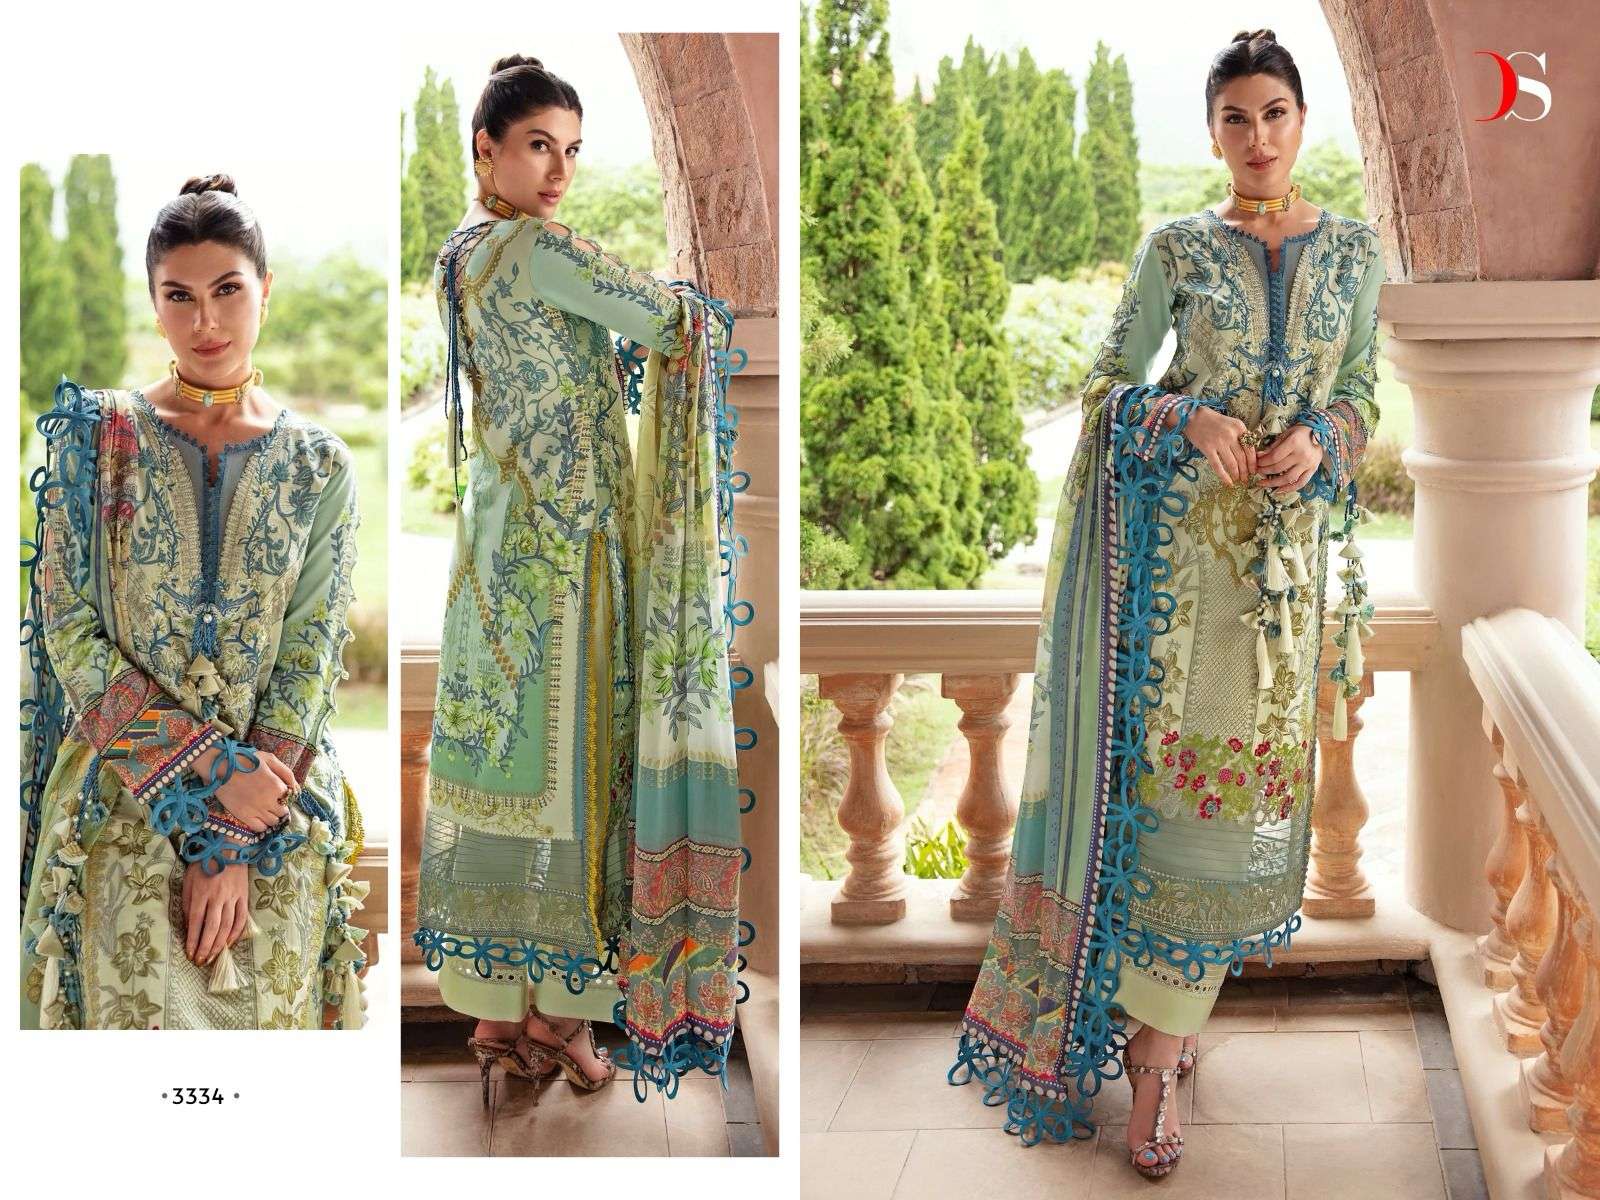 Deepsy Firdous Queens Court 5 Cotton Dupatta Pakistani Suits Wholesale catalog